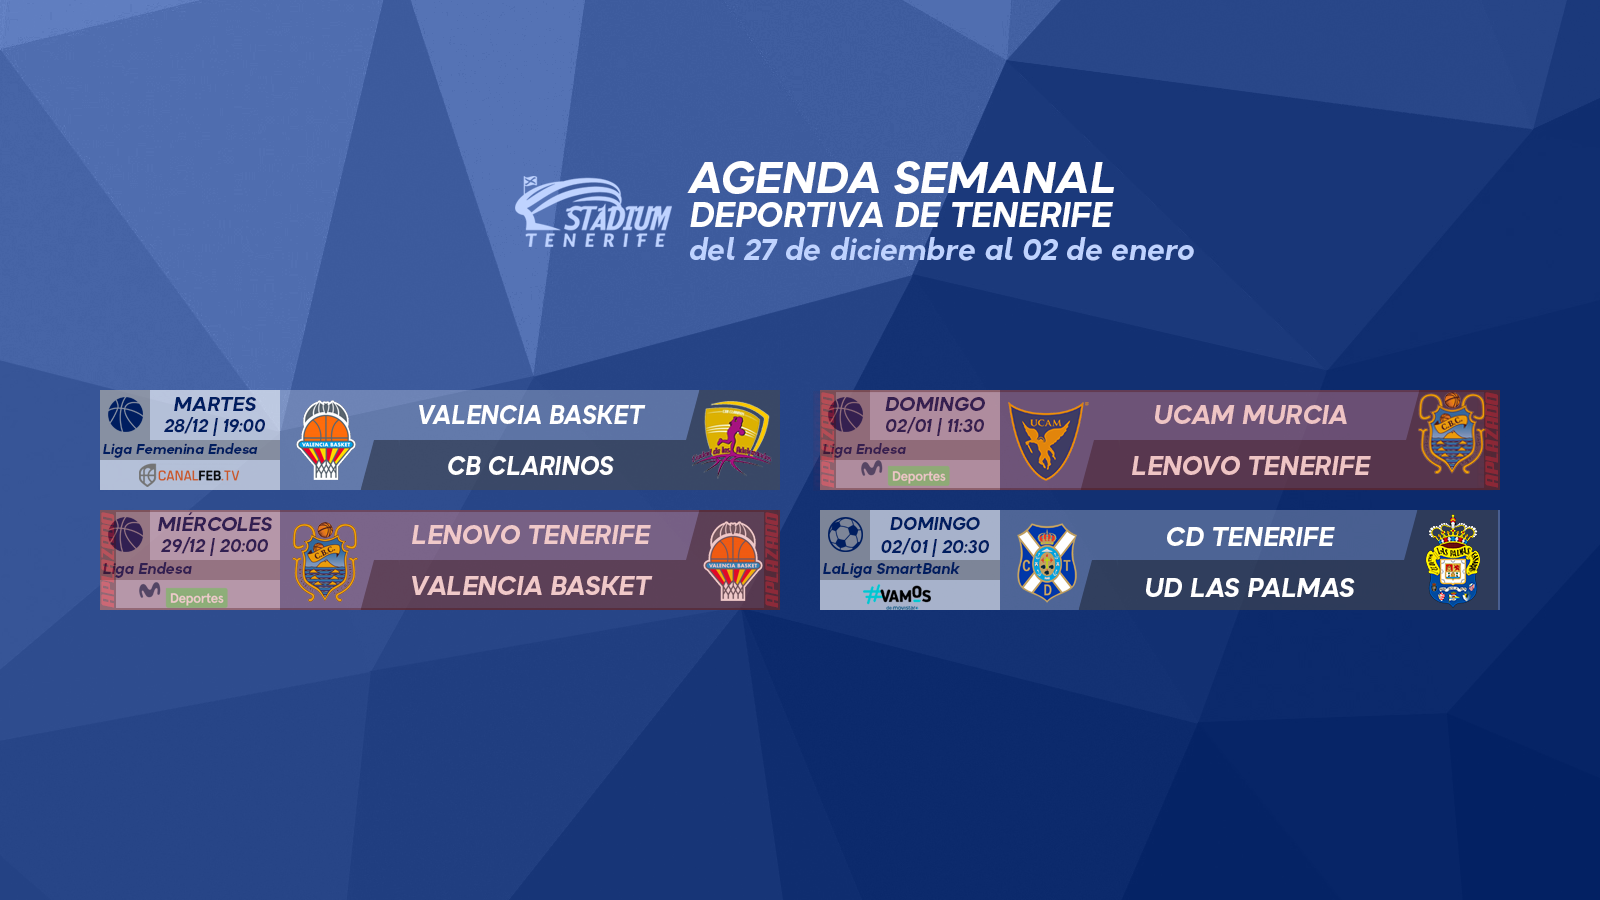 Agenda Semanal Deportiva de Tenerife (27 de diciembre al 2 de enero)